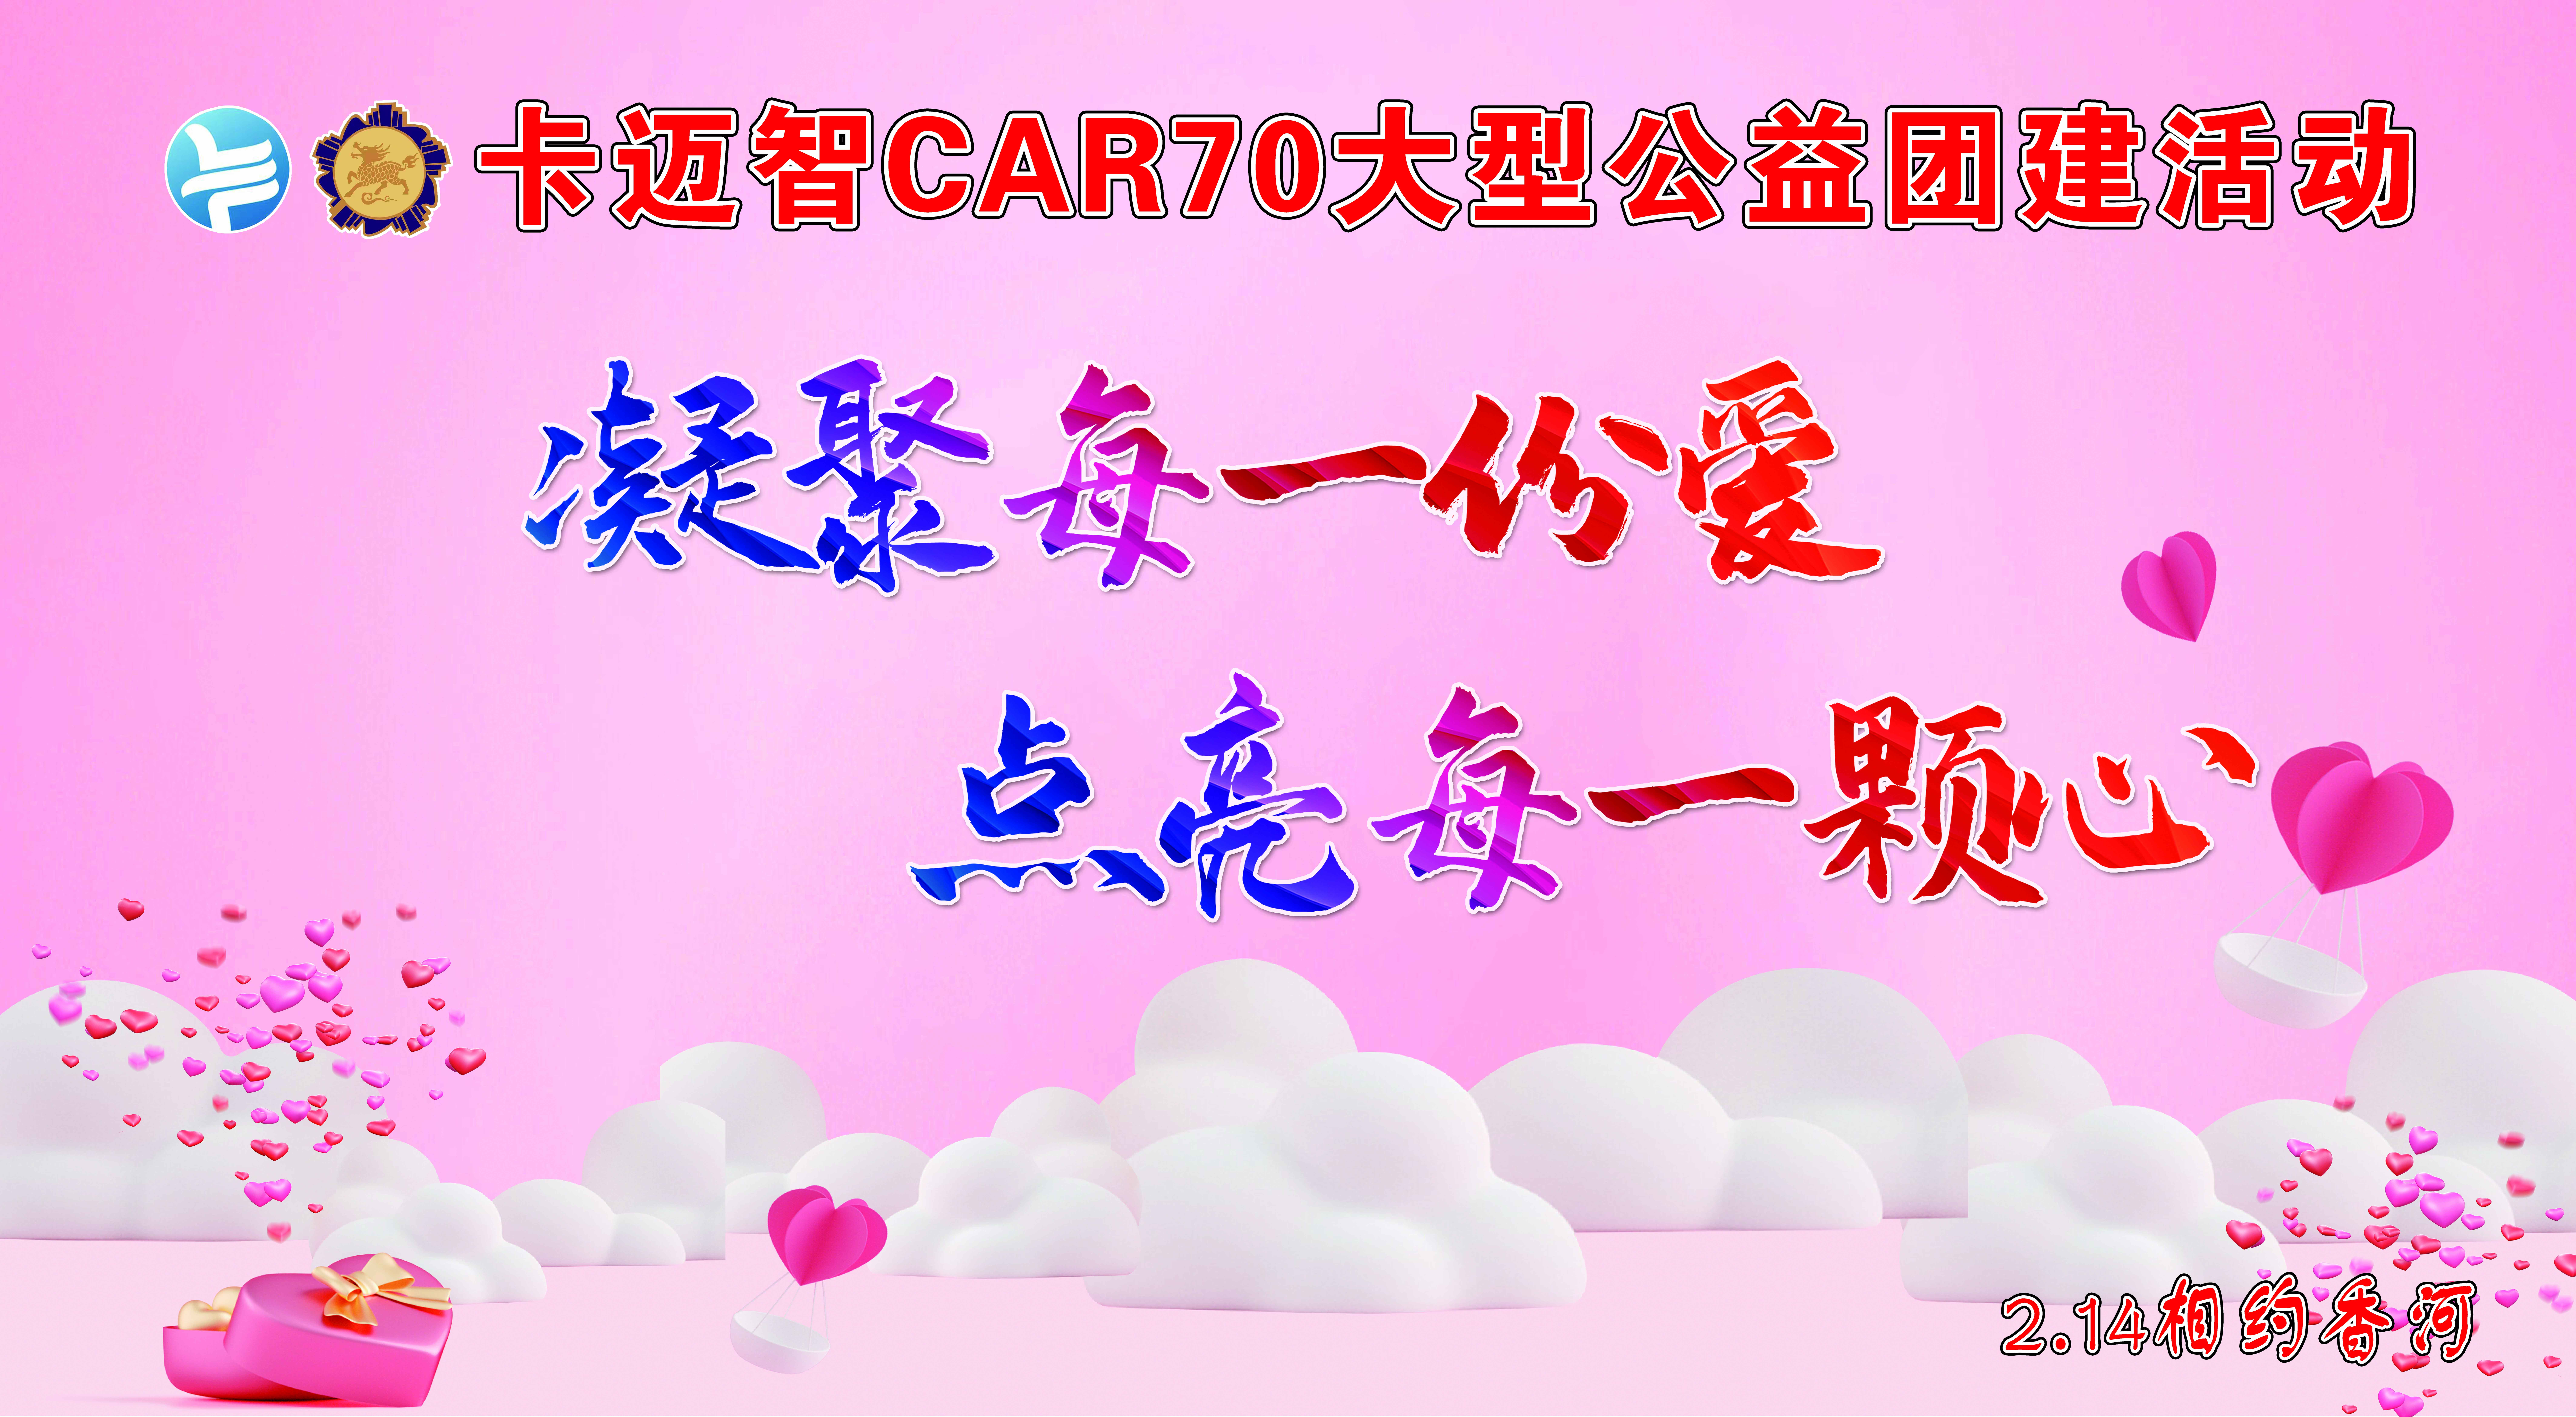 【卡迈智快讯】CAR70大型公益活动“凝聚每一份爱 点亮每一颗心”圆满结束